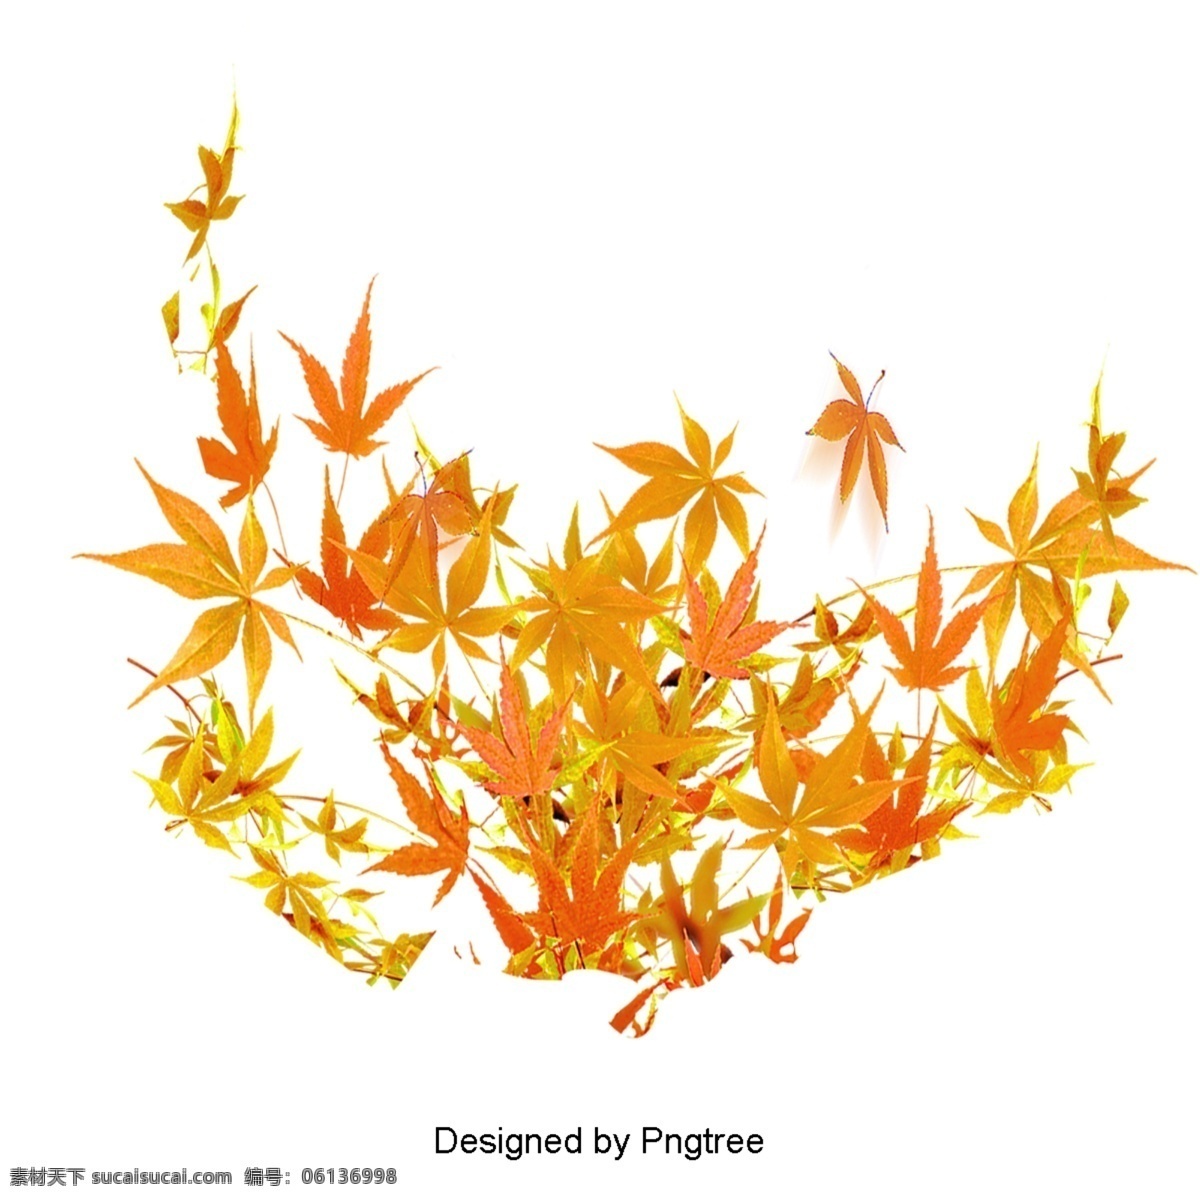 秋 枫叶 材料 秋天 树叶 落叶 许多 落下 悲伤 离开 橙色 黄色 家家 夹 一个